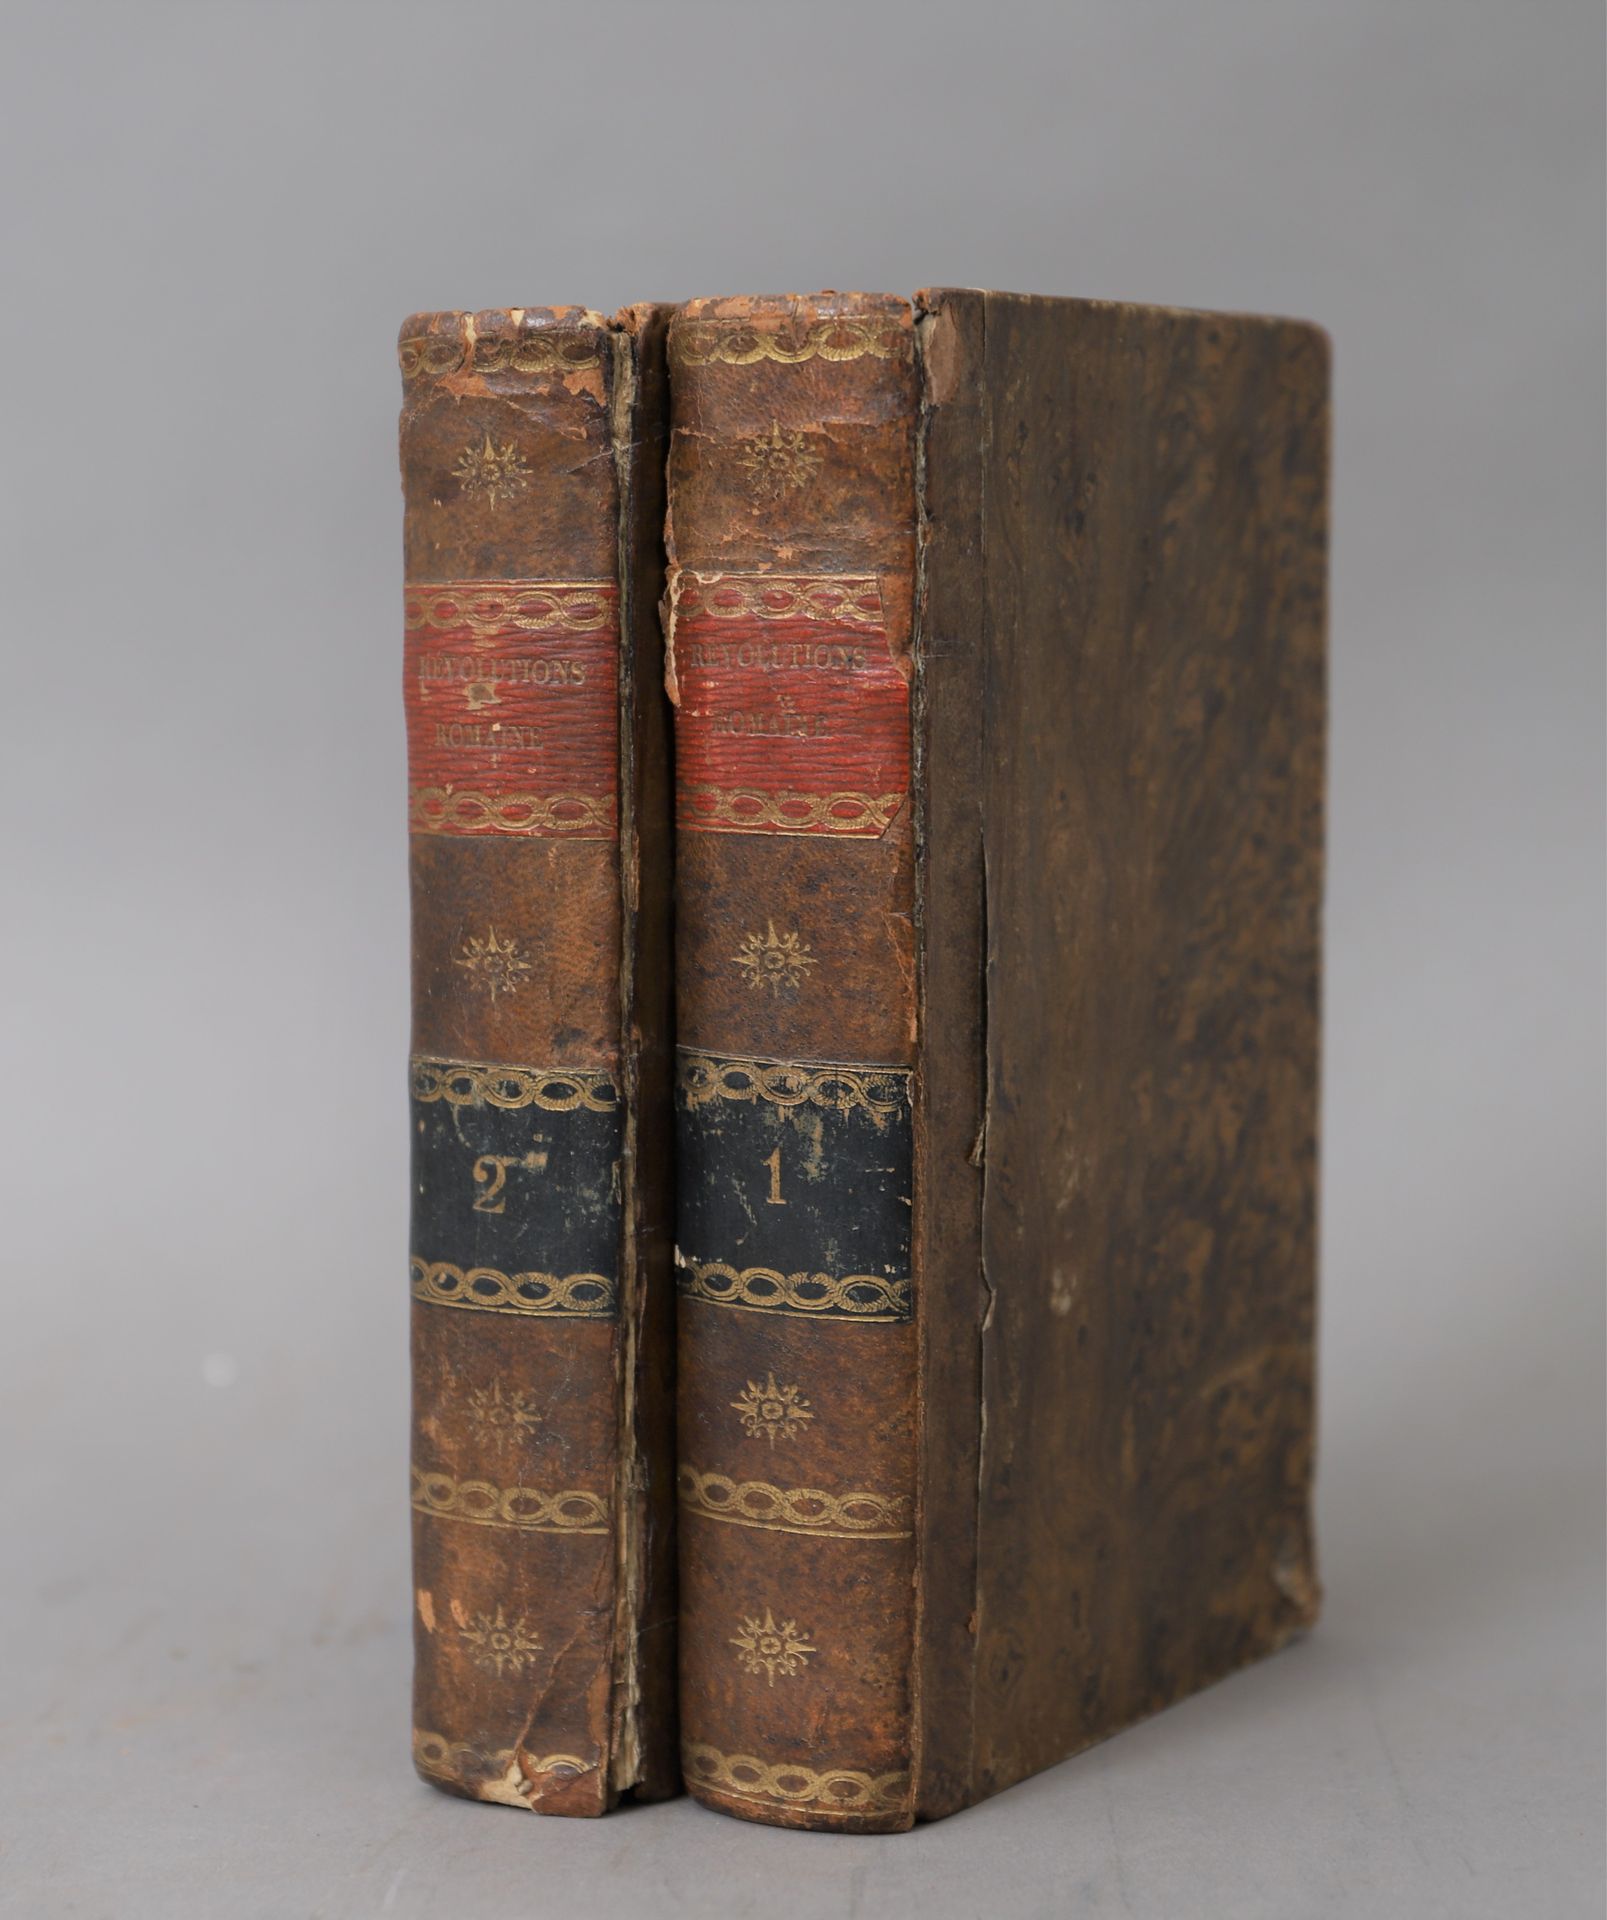 Null STORIA delle RIVOLUZIONI ROMANE

1810

2 volumi rilegati.